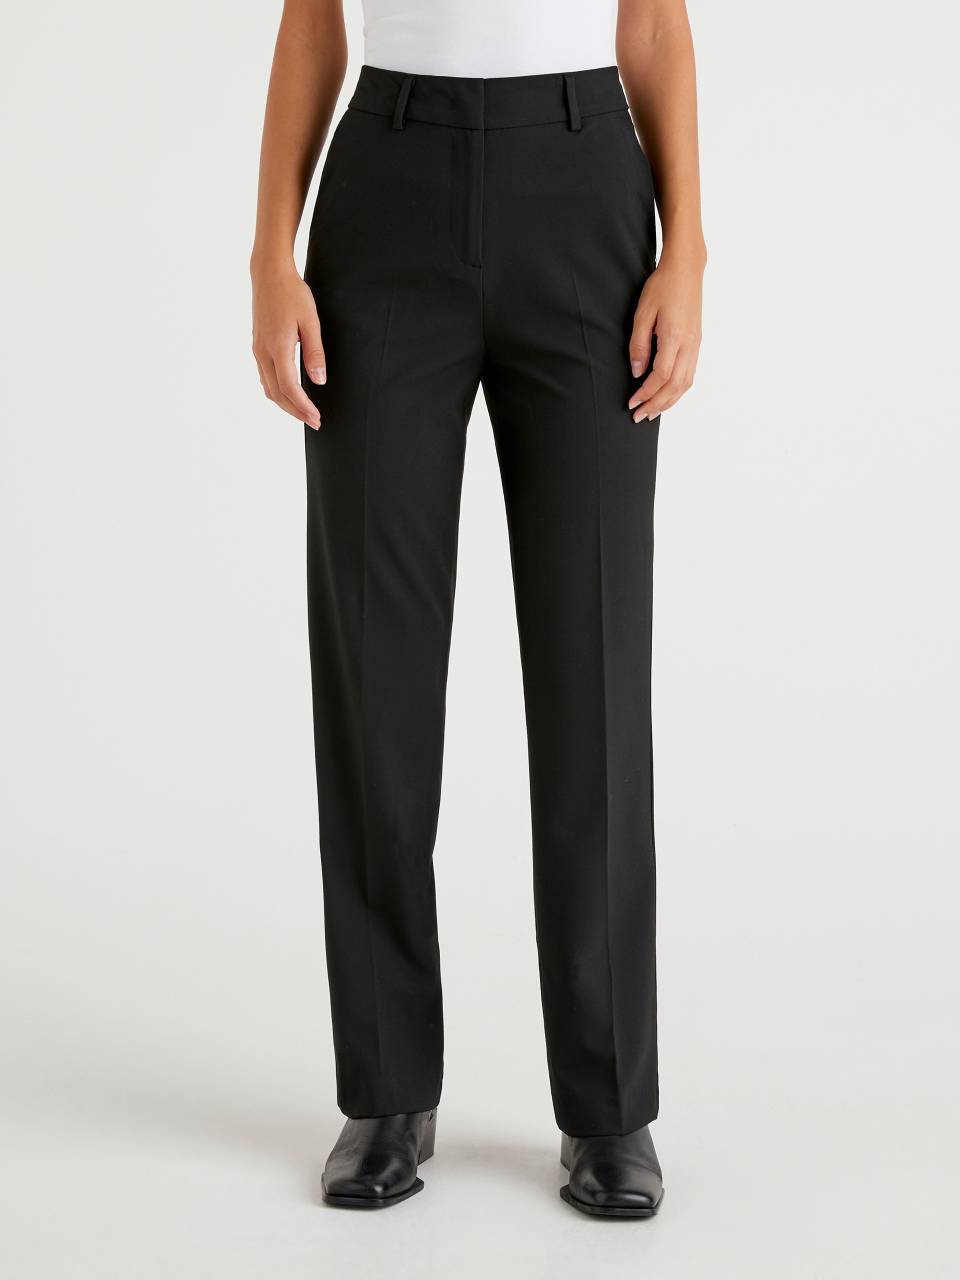 Pantalones clásicos en color negro con pernera recta y cinturilla elástica.  Tallas 44 a 64